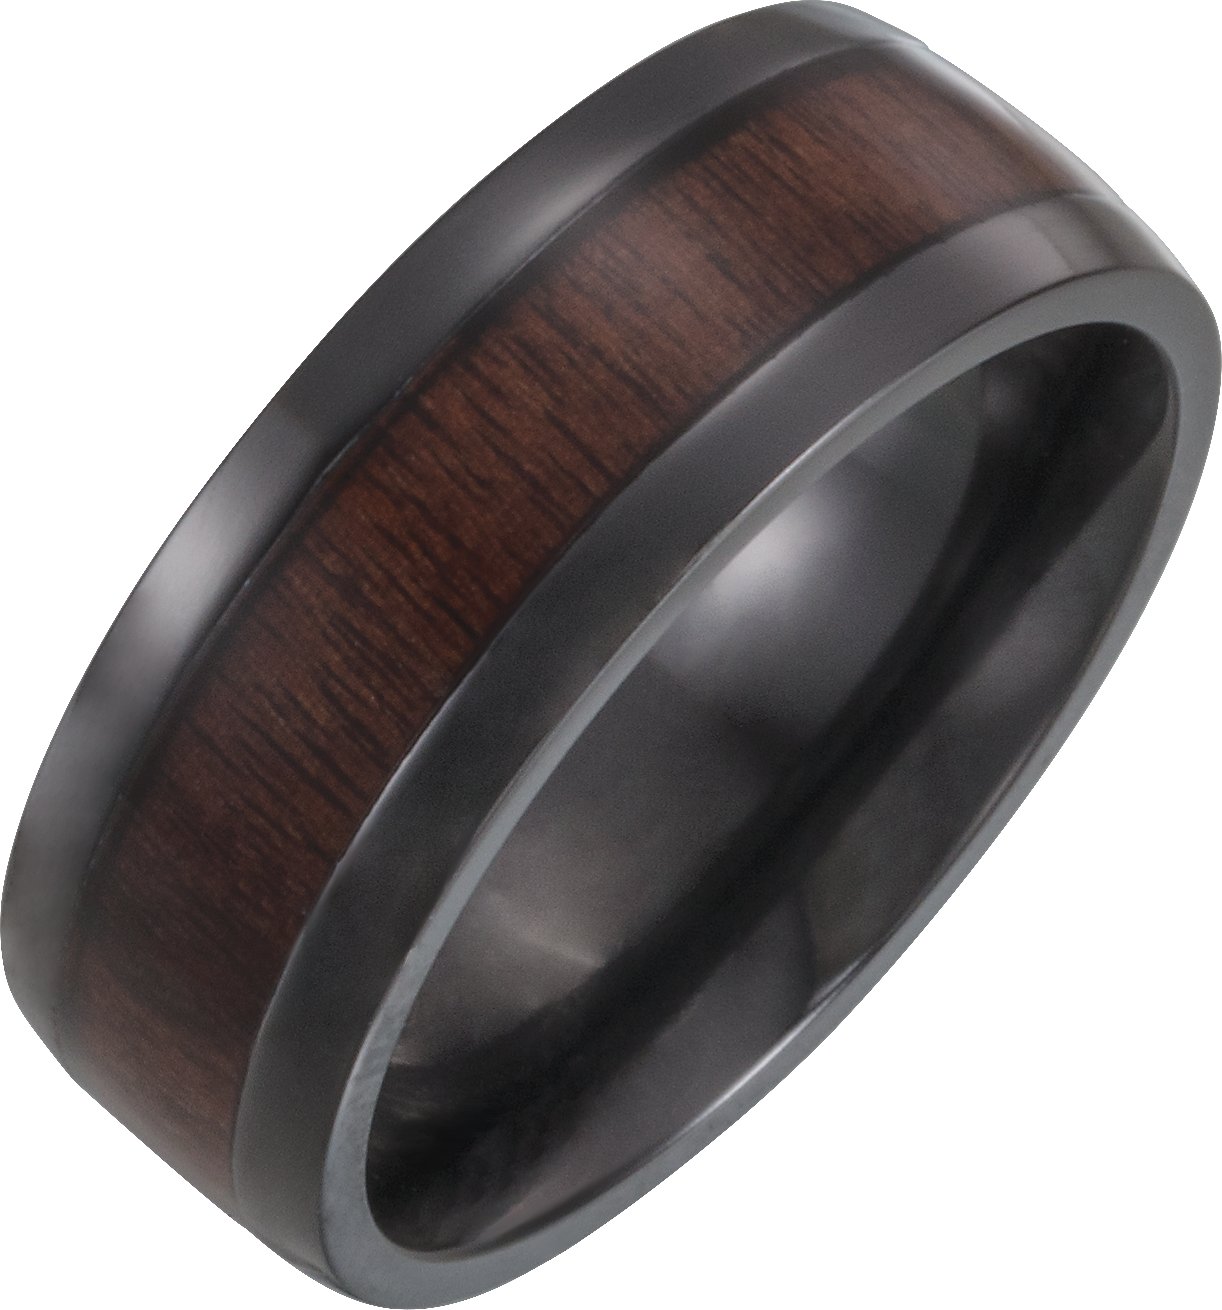 Black Titanium 8 mm Beveled-Edge Band with Wood Inlay Size 8